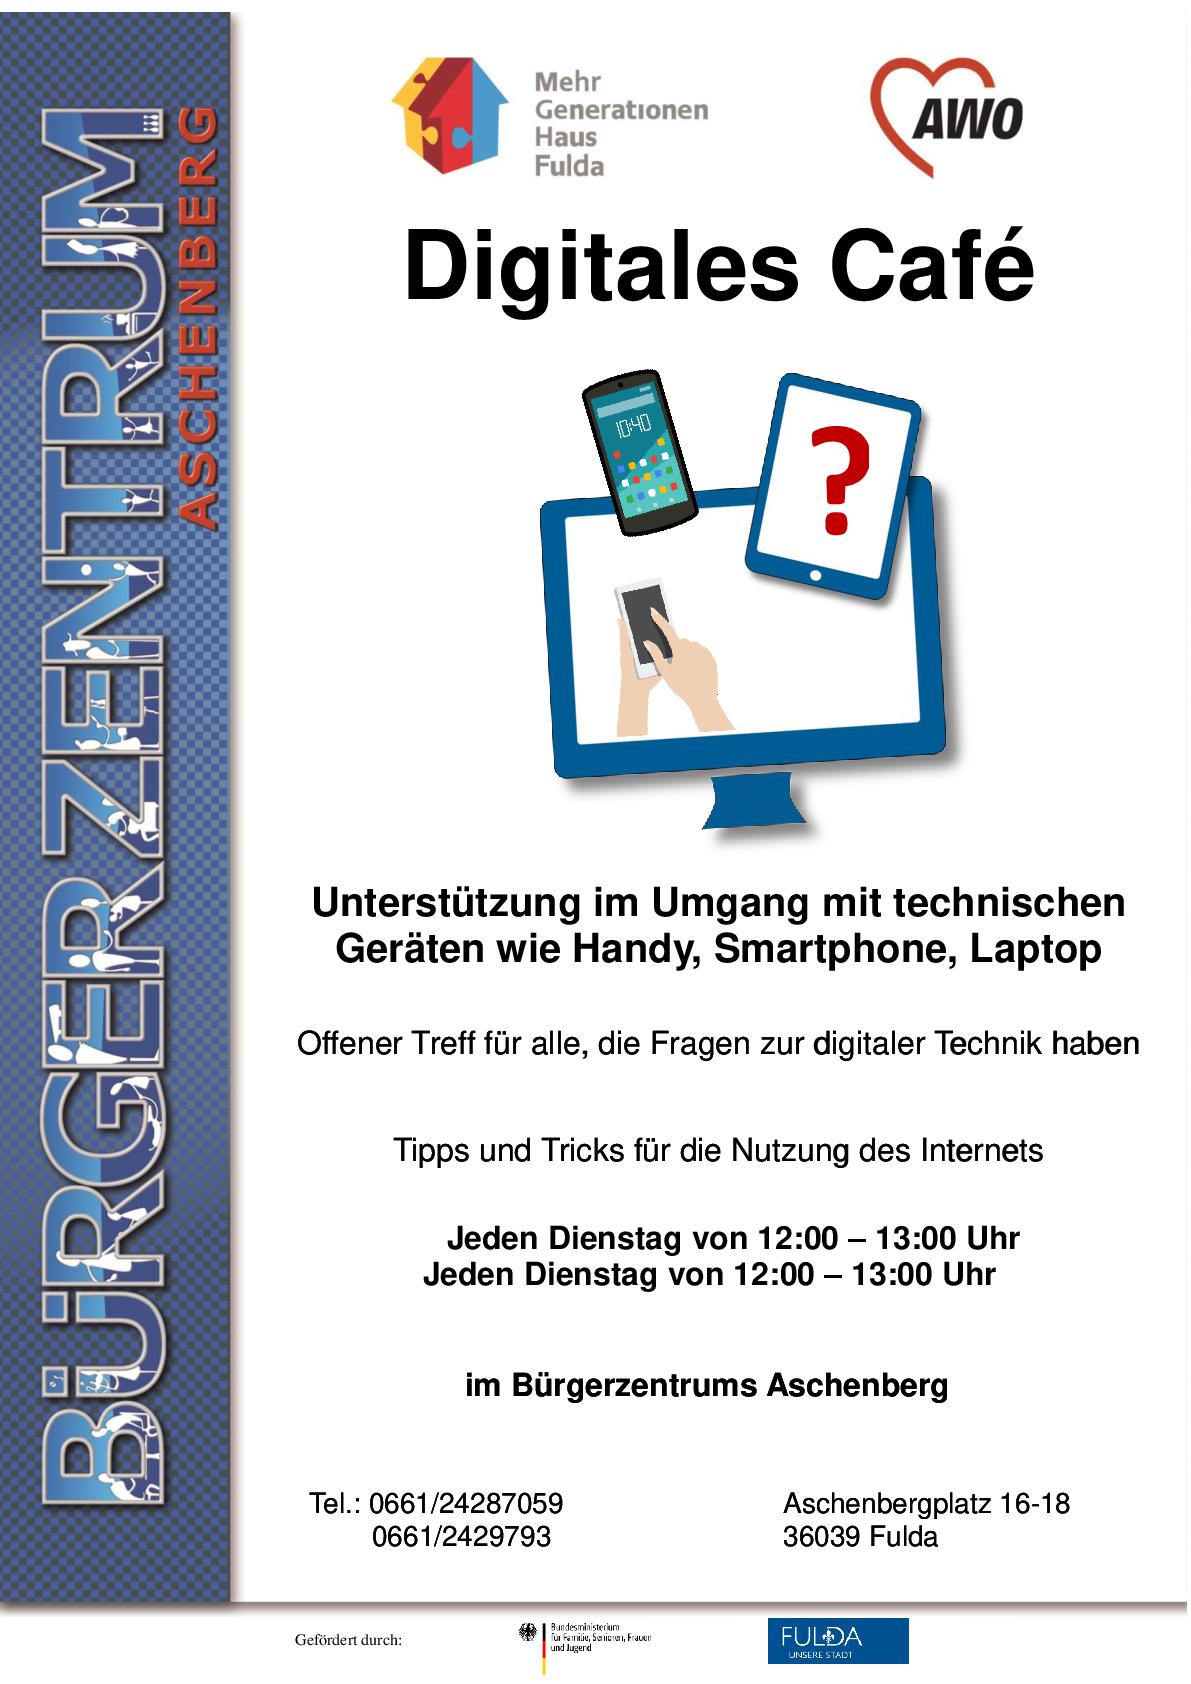 Digitales Cafe